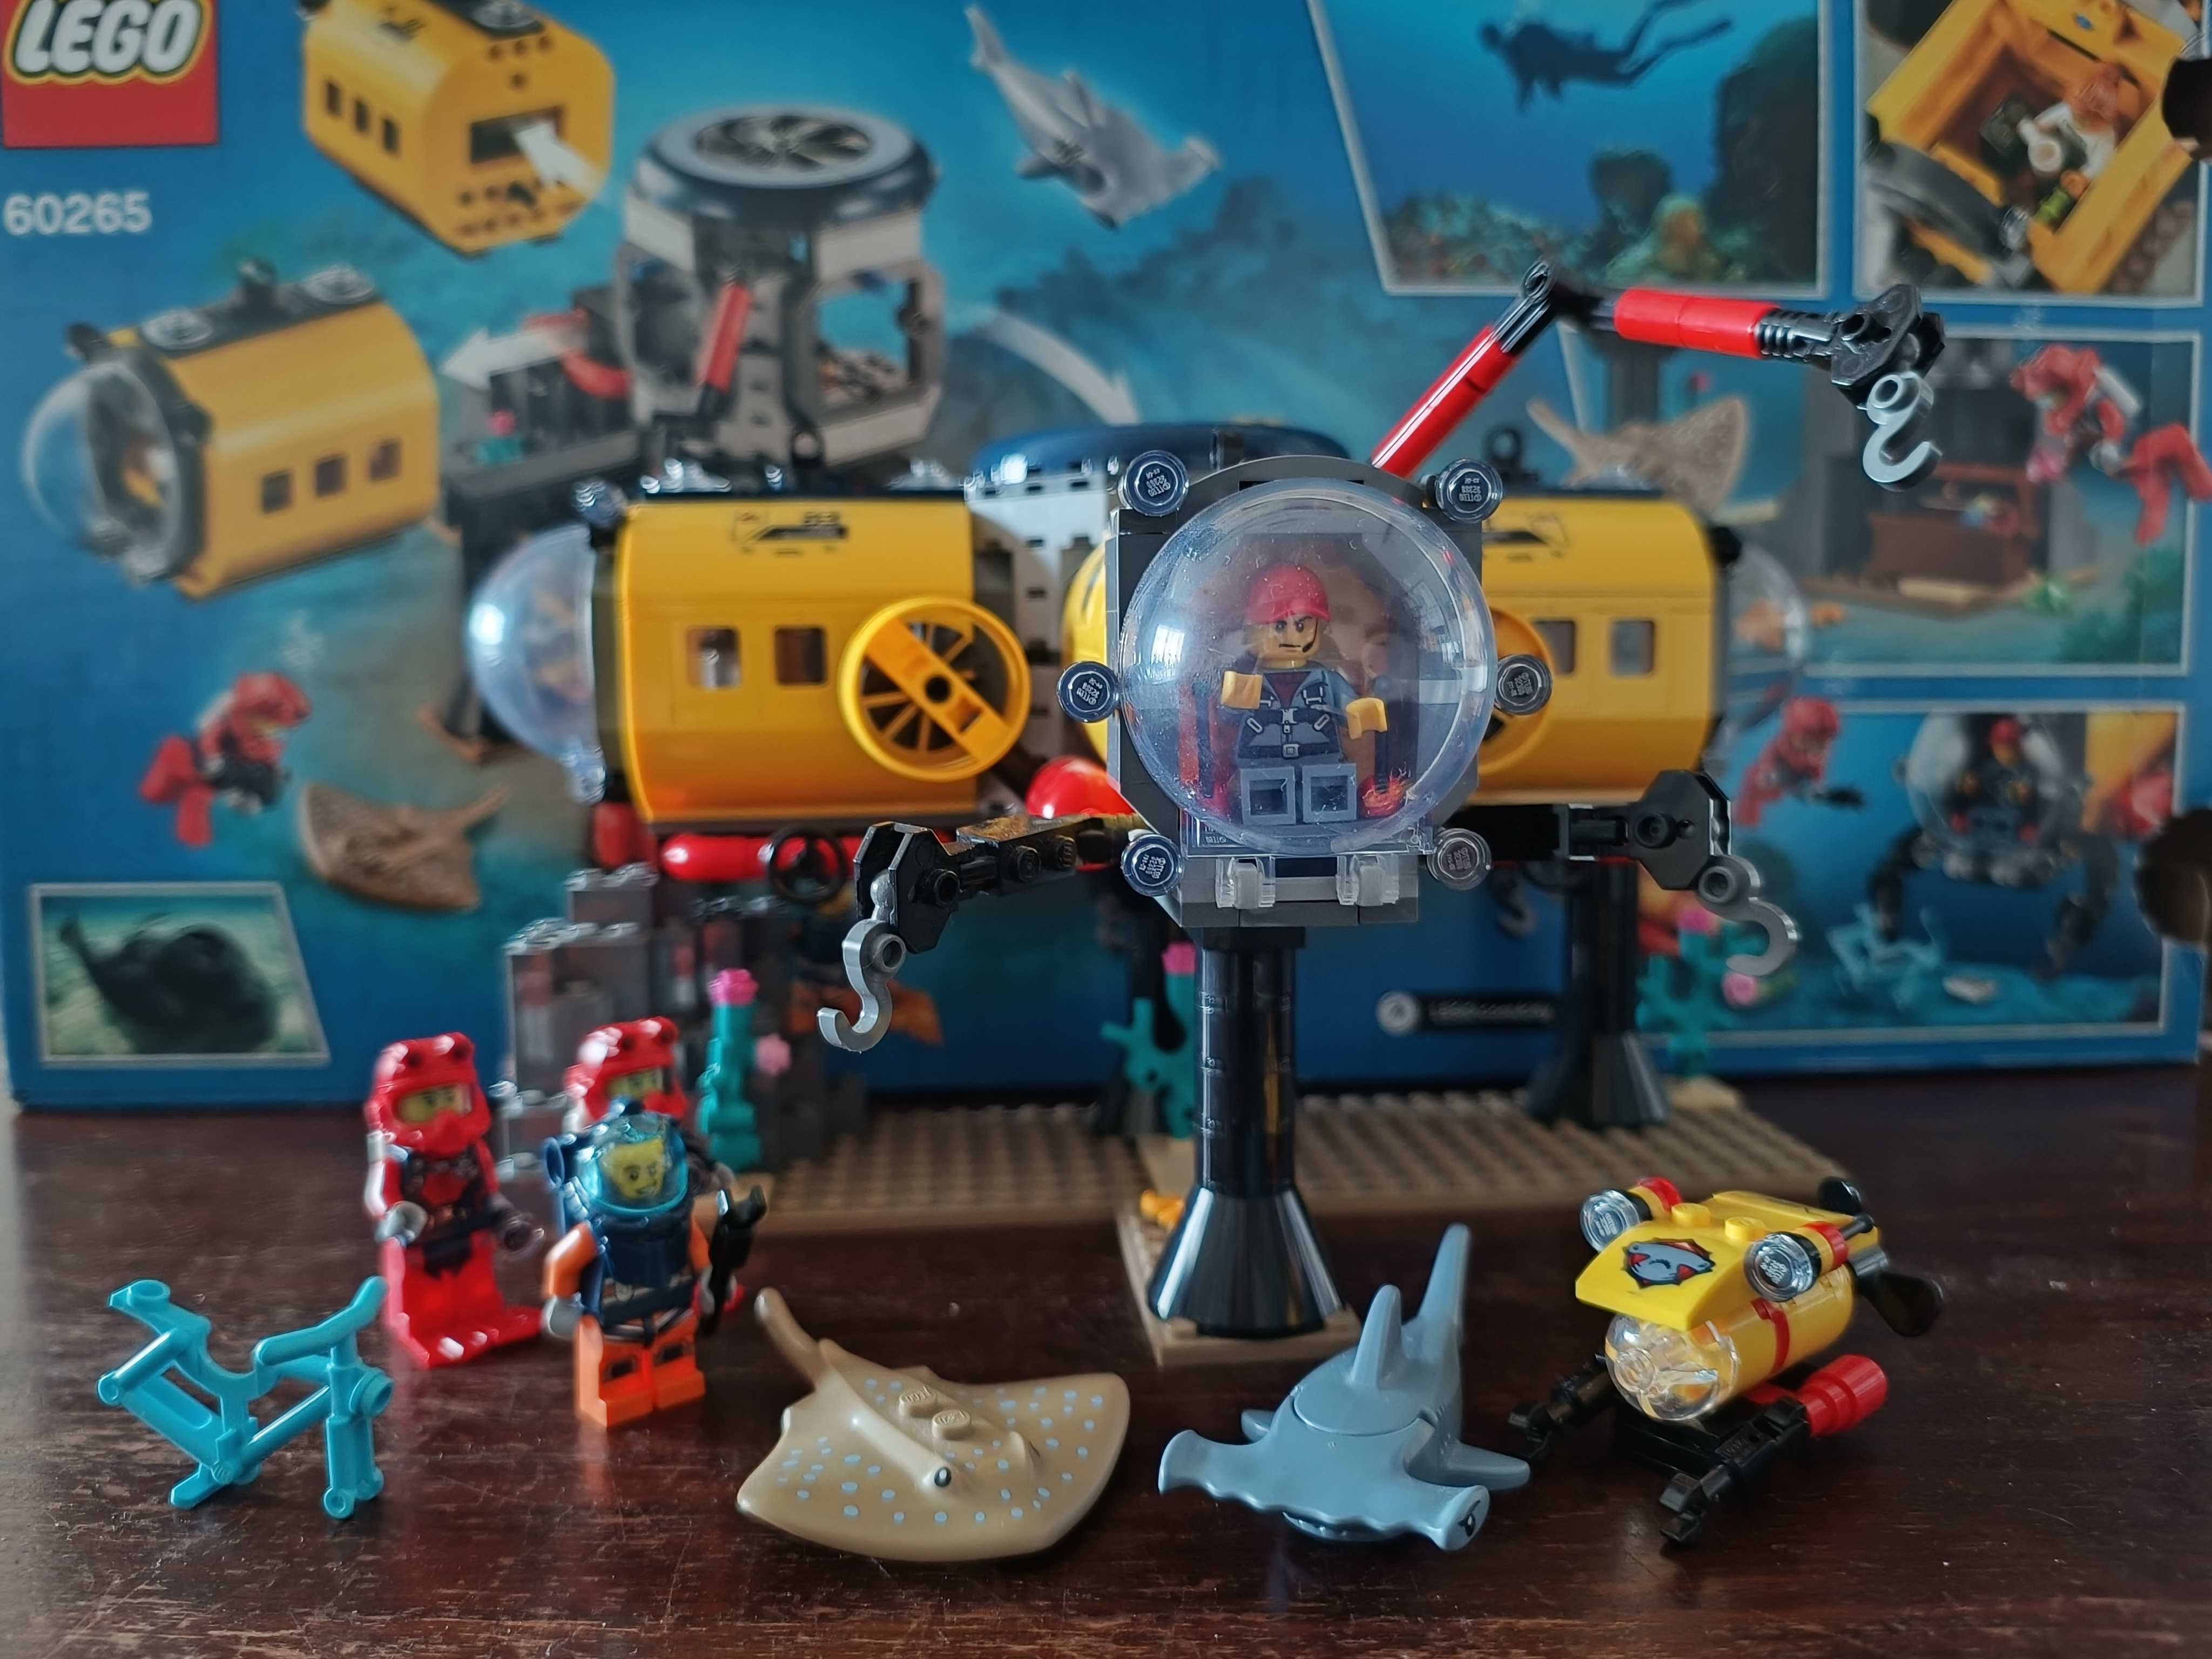 LEGO City Baza badaczy oceanu 60265 Creator 3w1 31130 Wyprawa po skarb